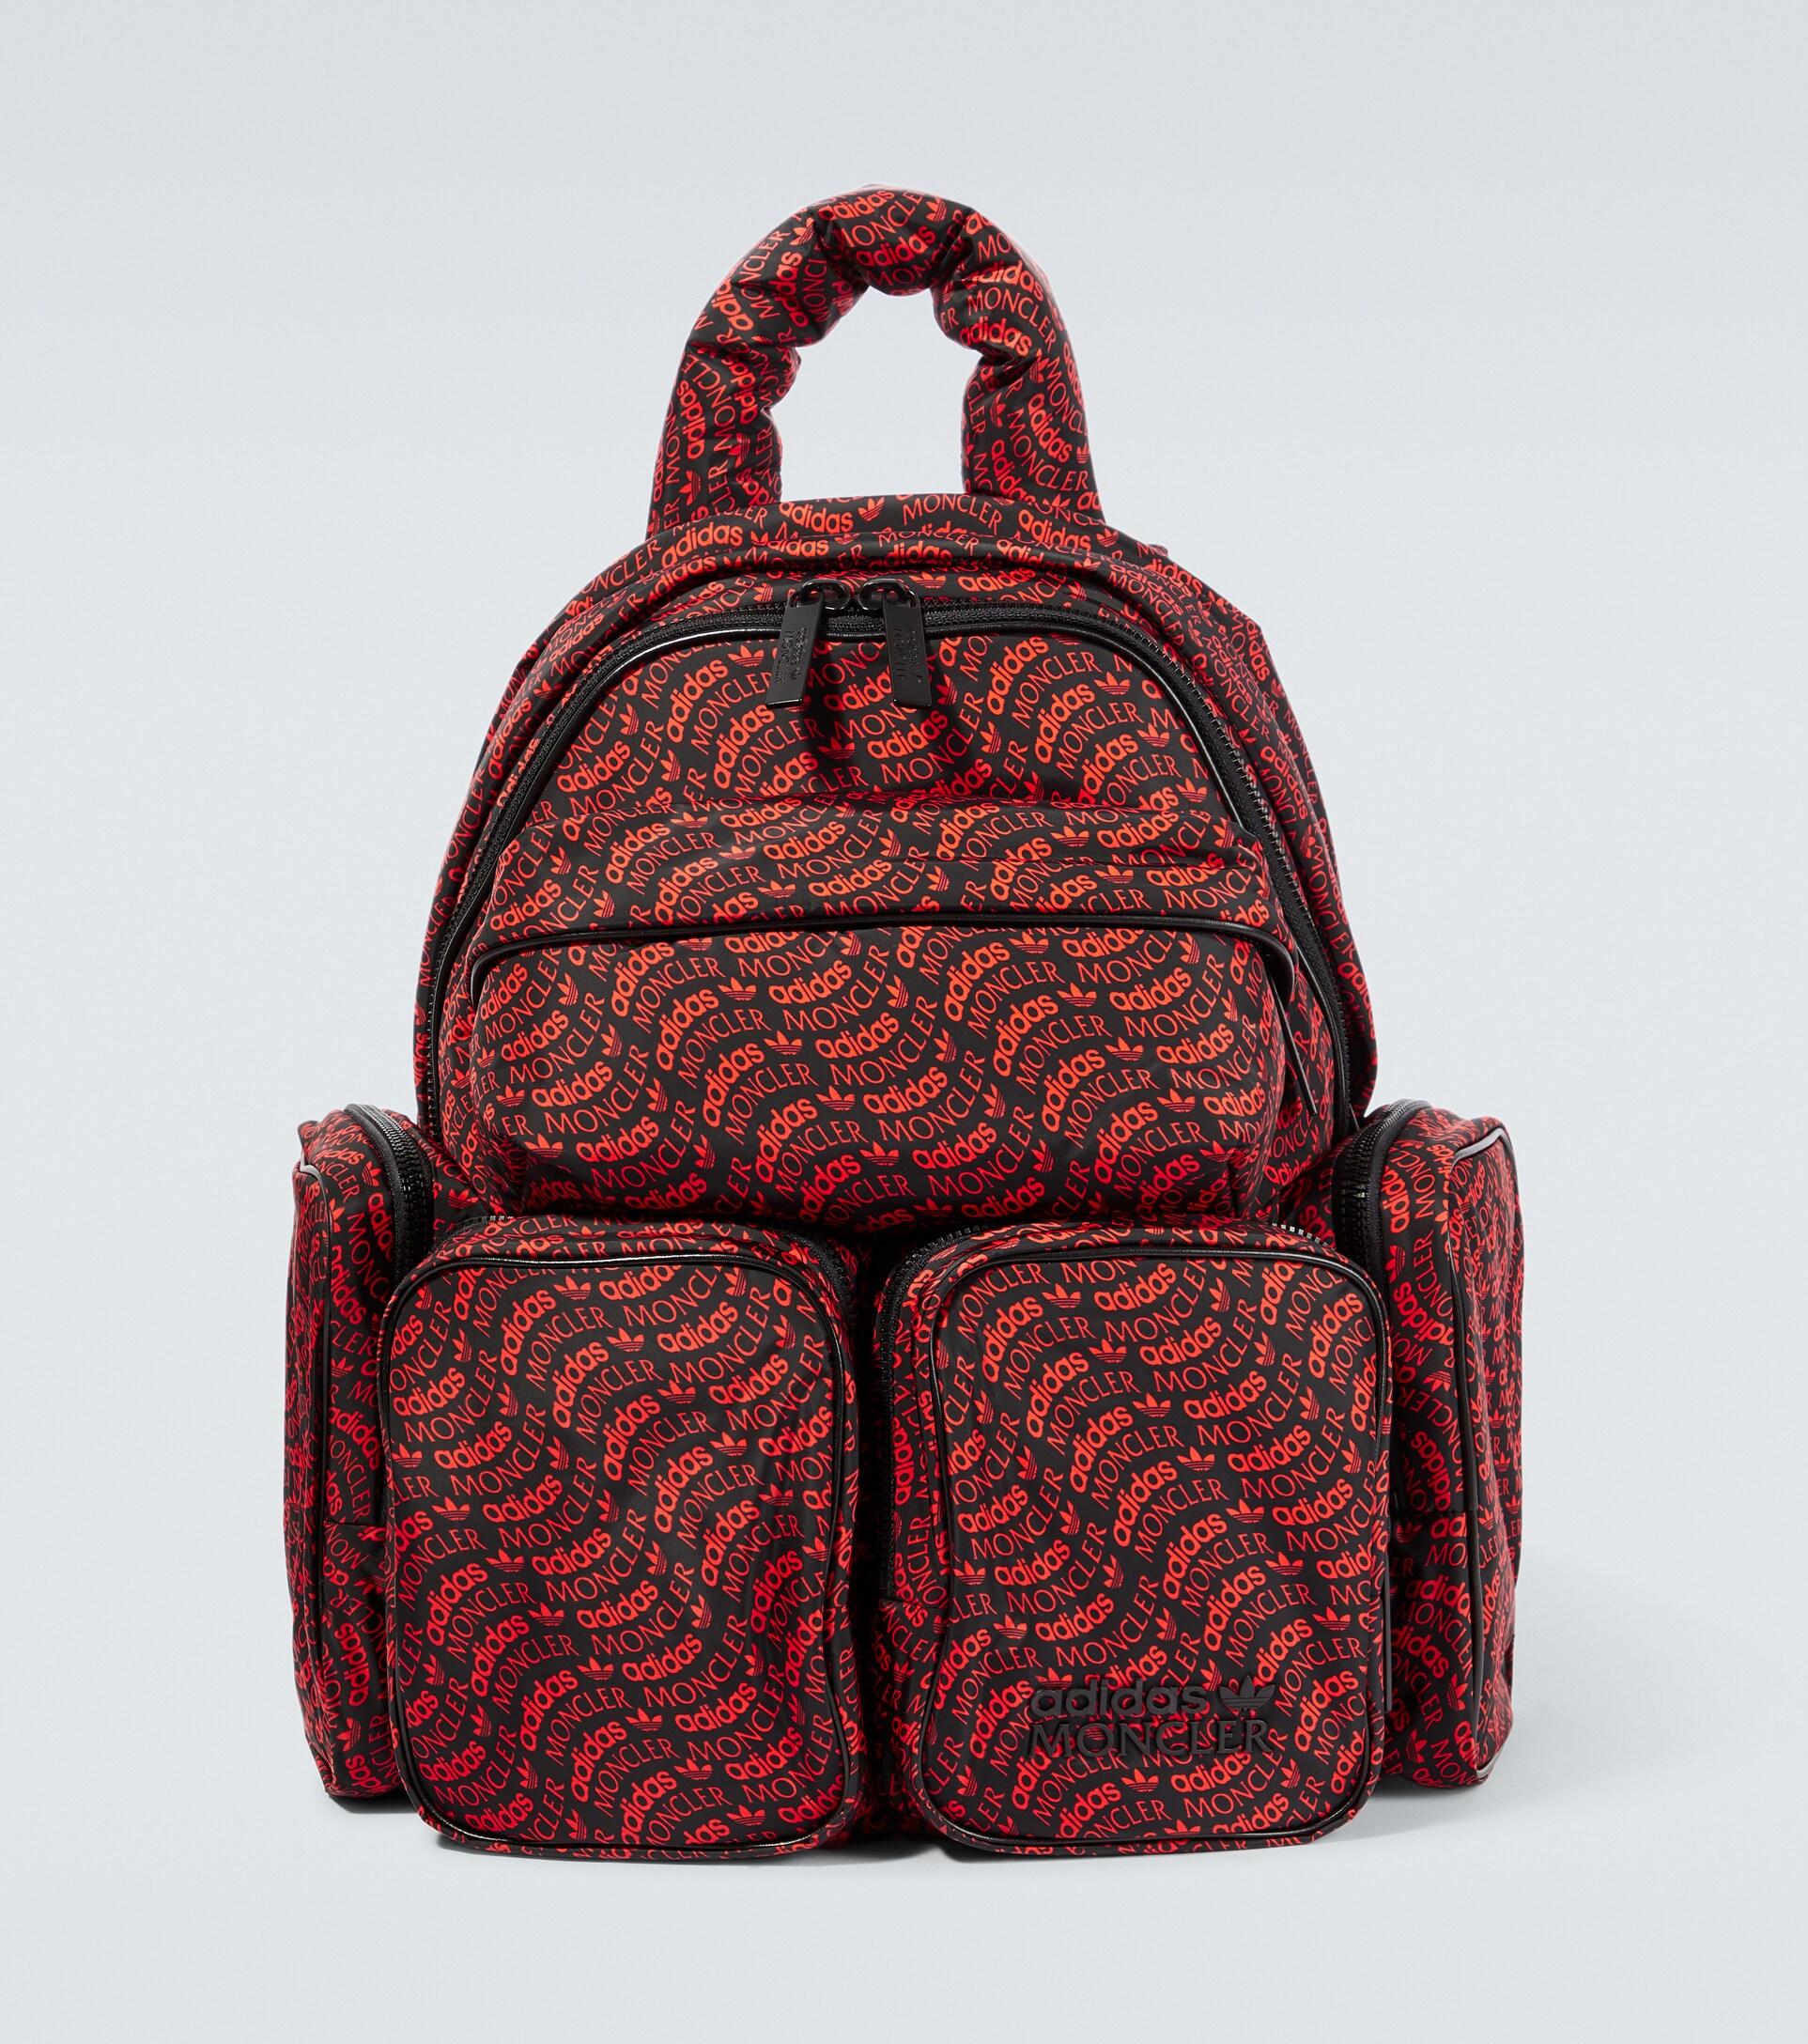 Calvin Klein Shoulder Bag - Red - Slogan